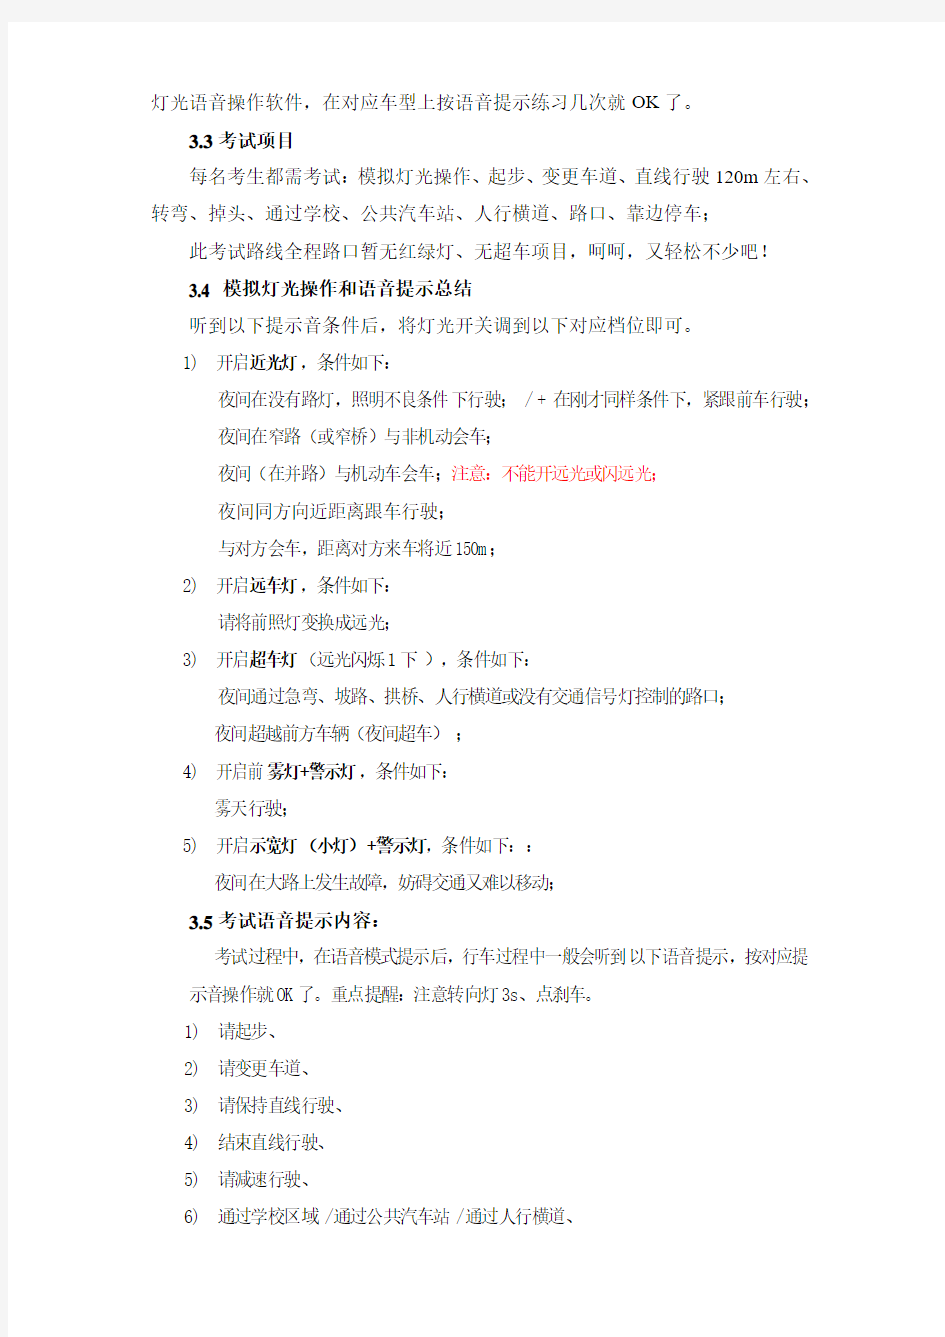 重庆电子路考(复盛场地)考试攻略20140113